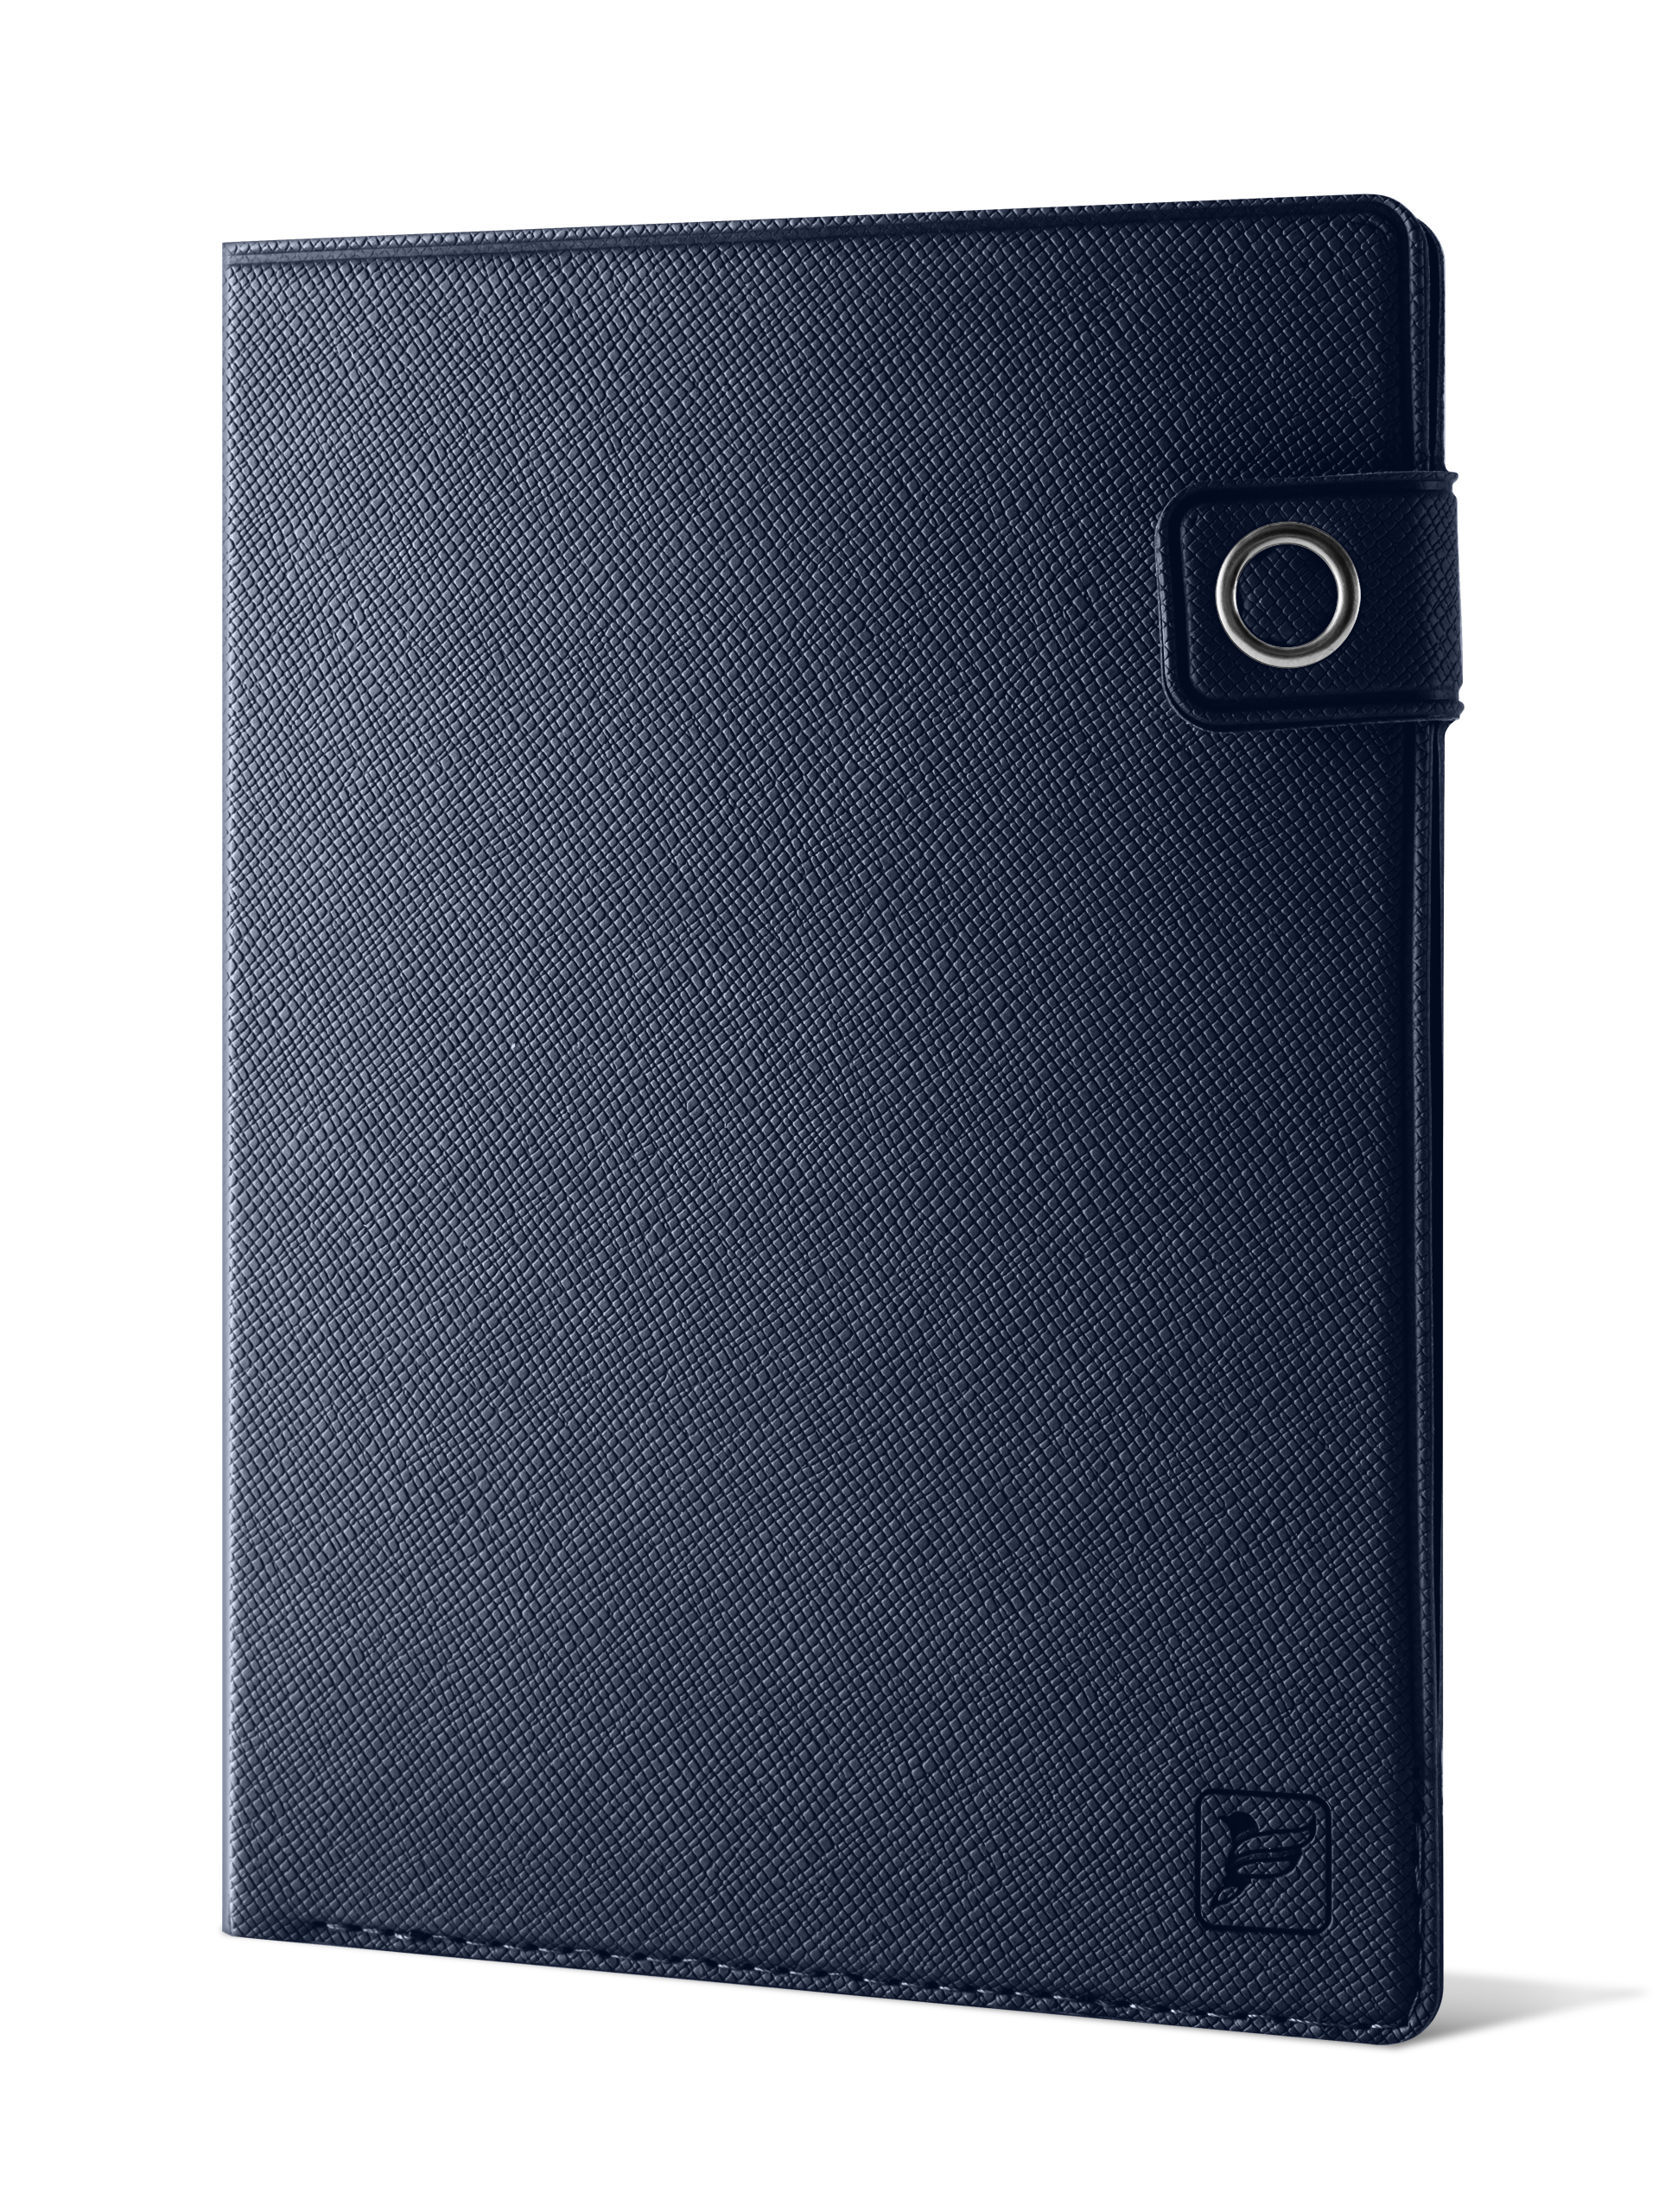 Обложка для паспорта унисекс Flexpocket KOP-06 темно-синяя